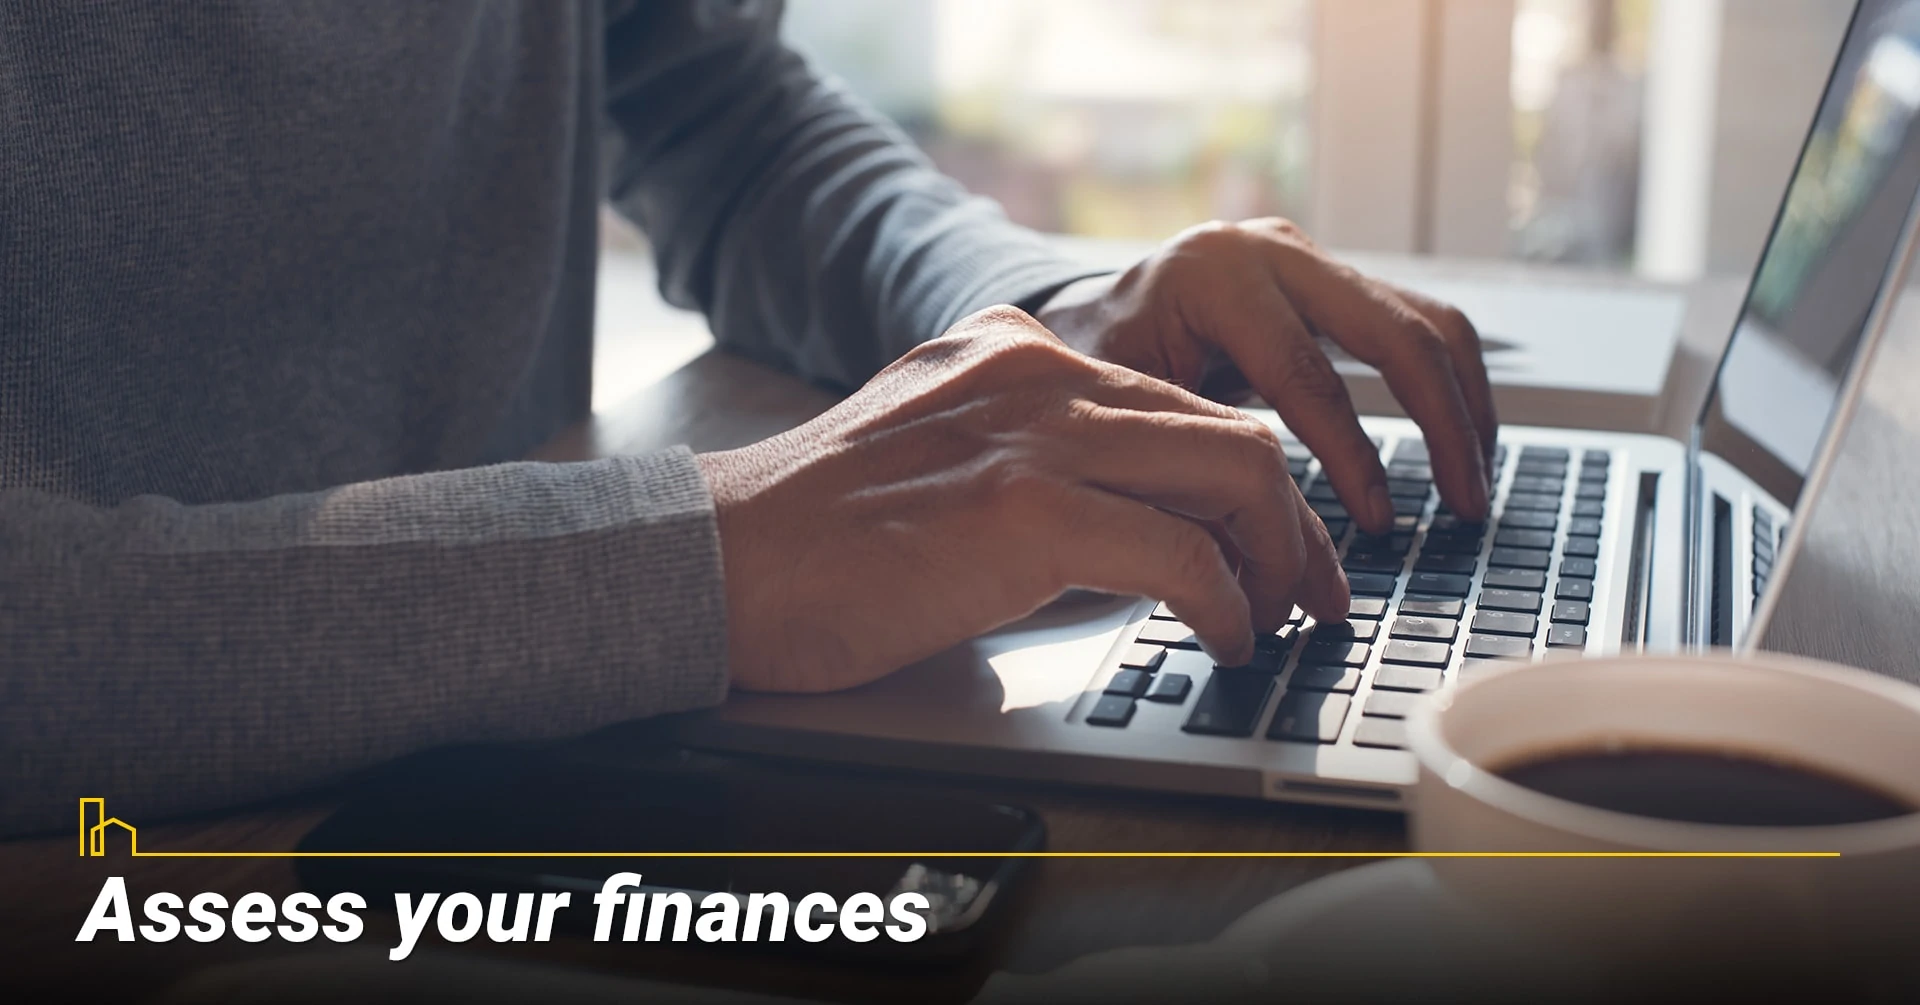 Assess your finances, review your finances